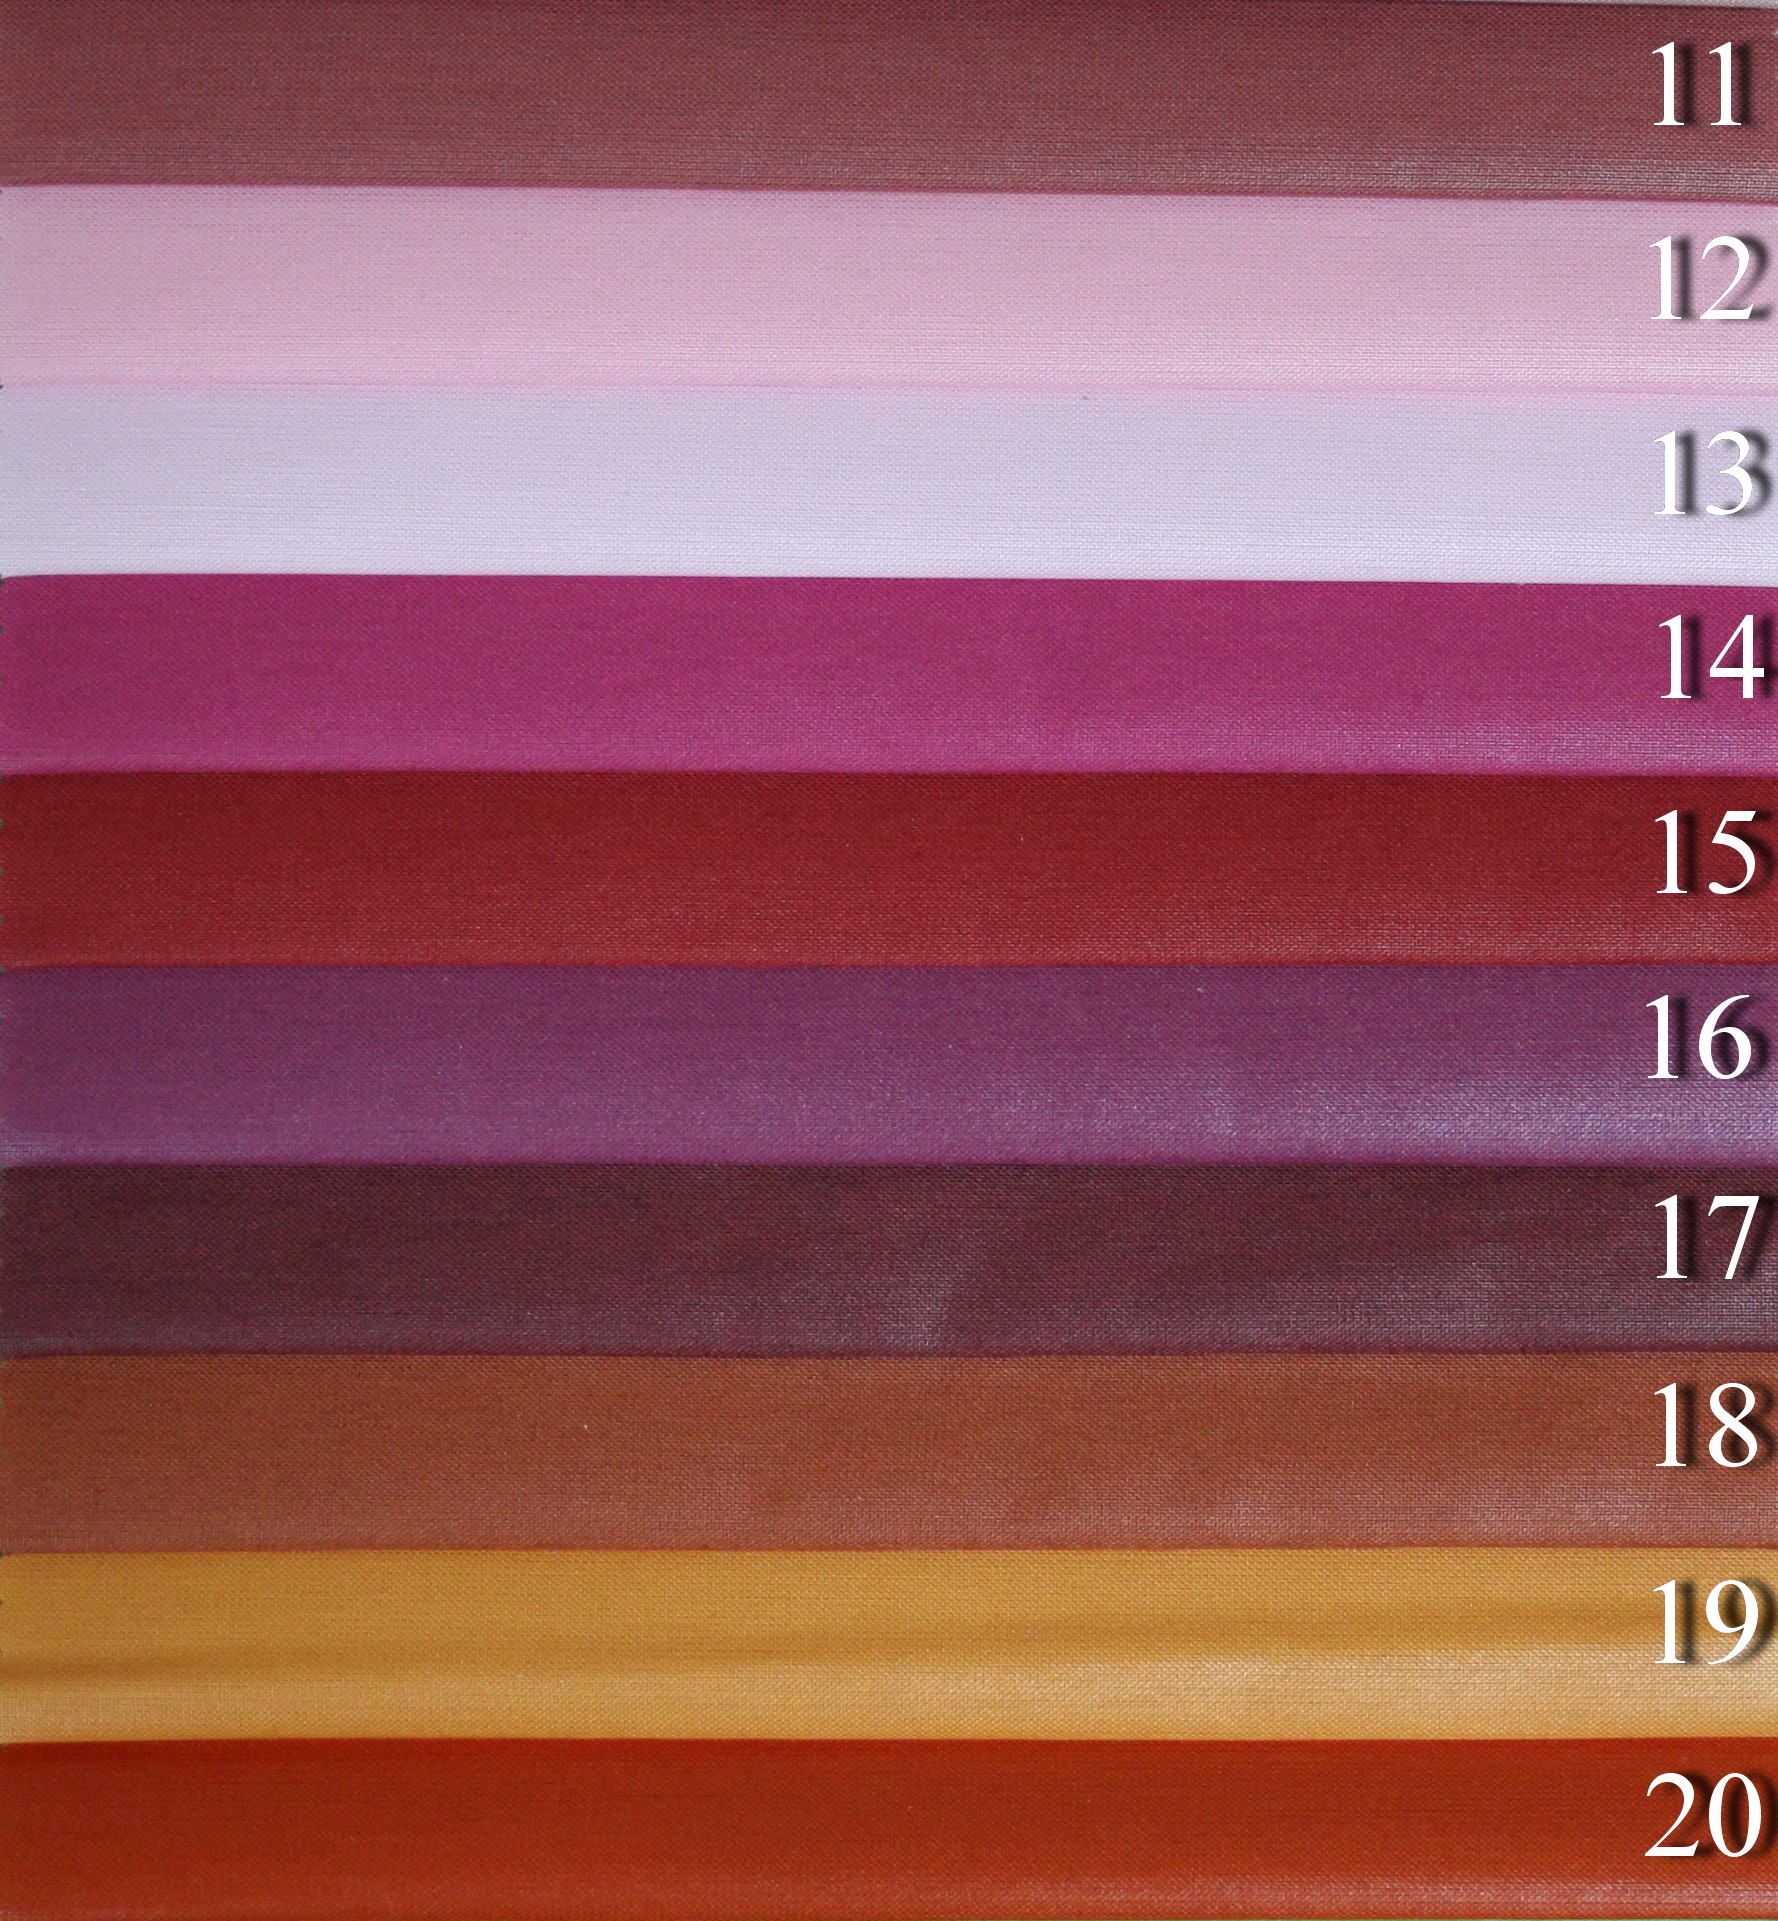 Chintz - подкладка для всех типов тканей (подкладочные ткани) 11, 12, 13, 14, 15, 16, 17, 18, 19, 20